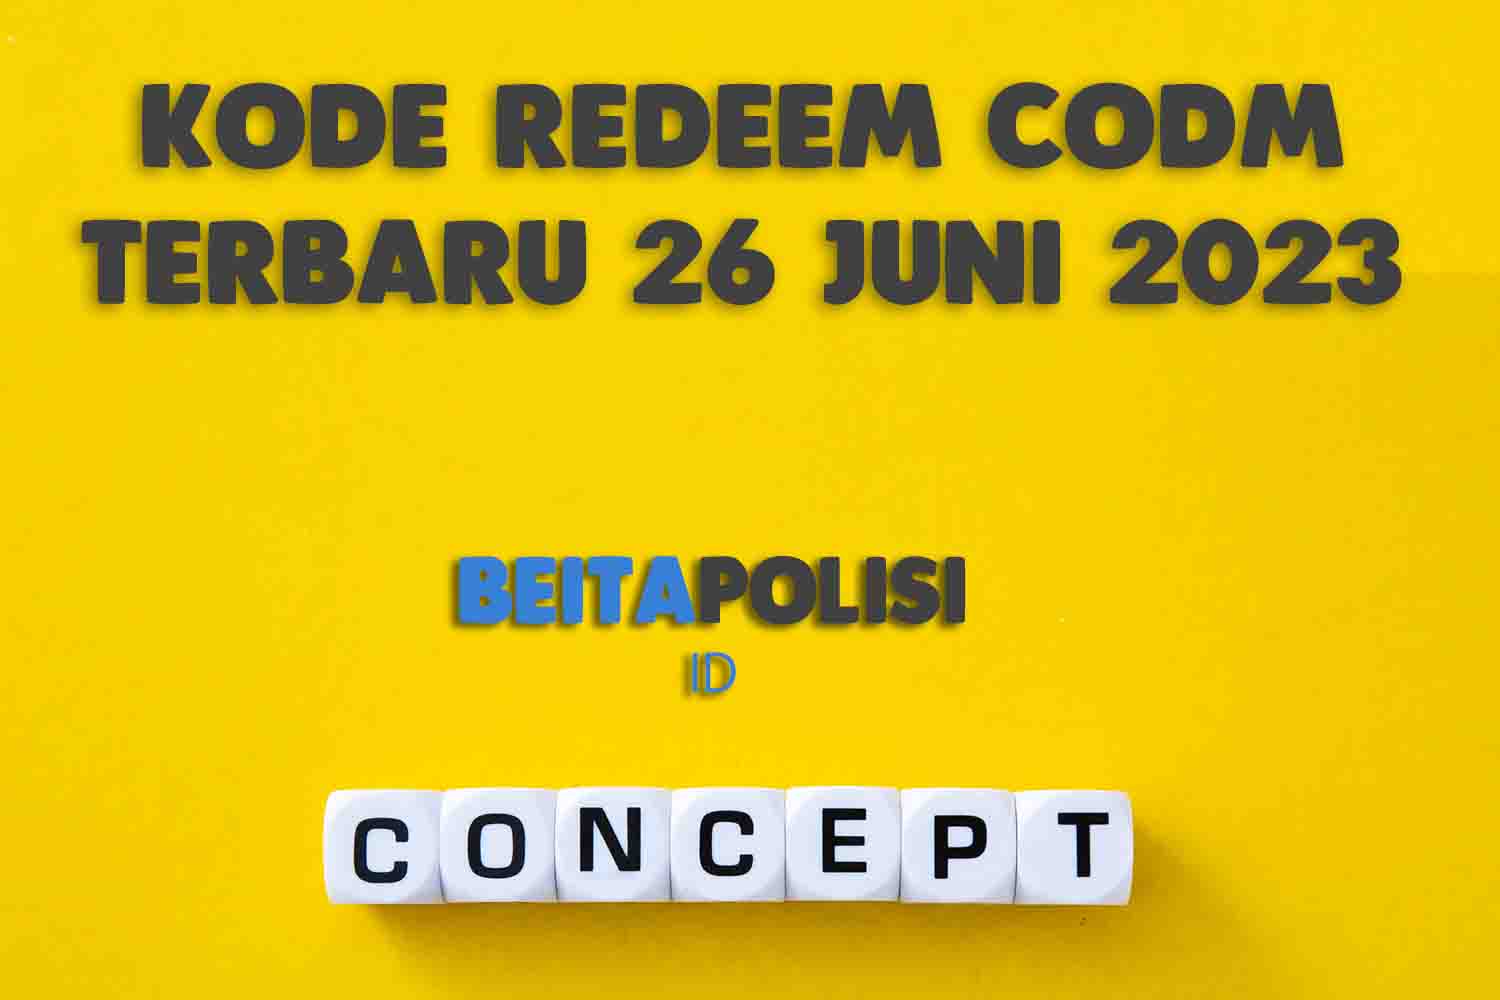 Kode Redeem Codm Terbaru 26 Juni 2023